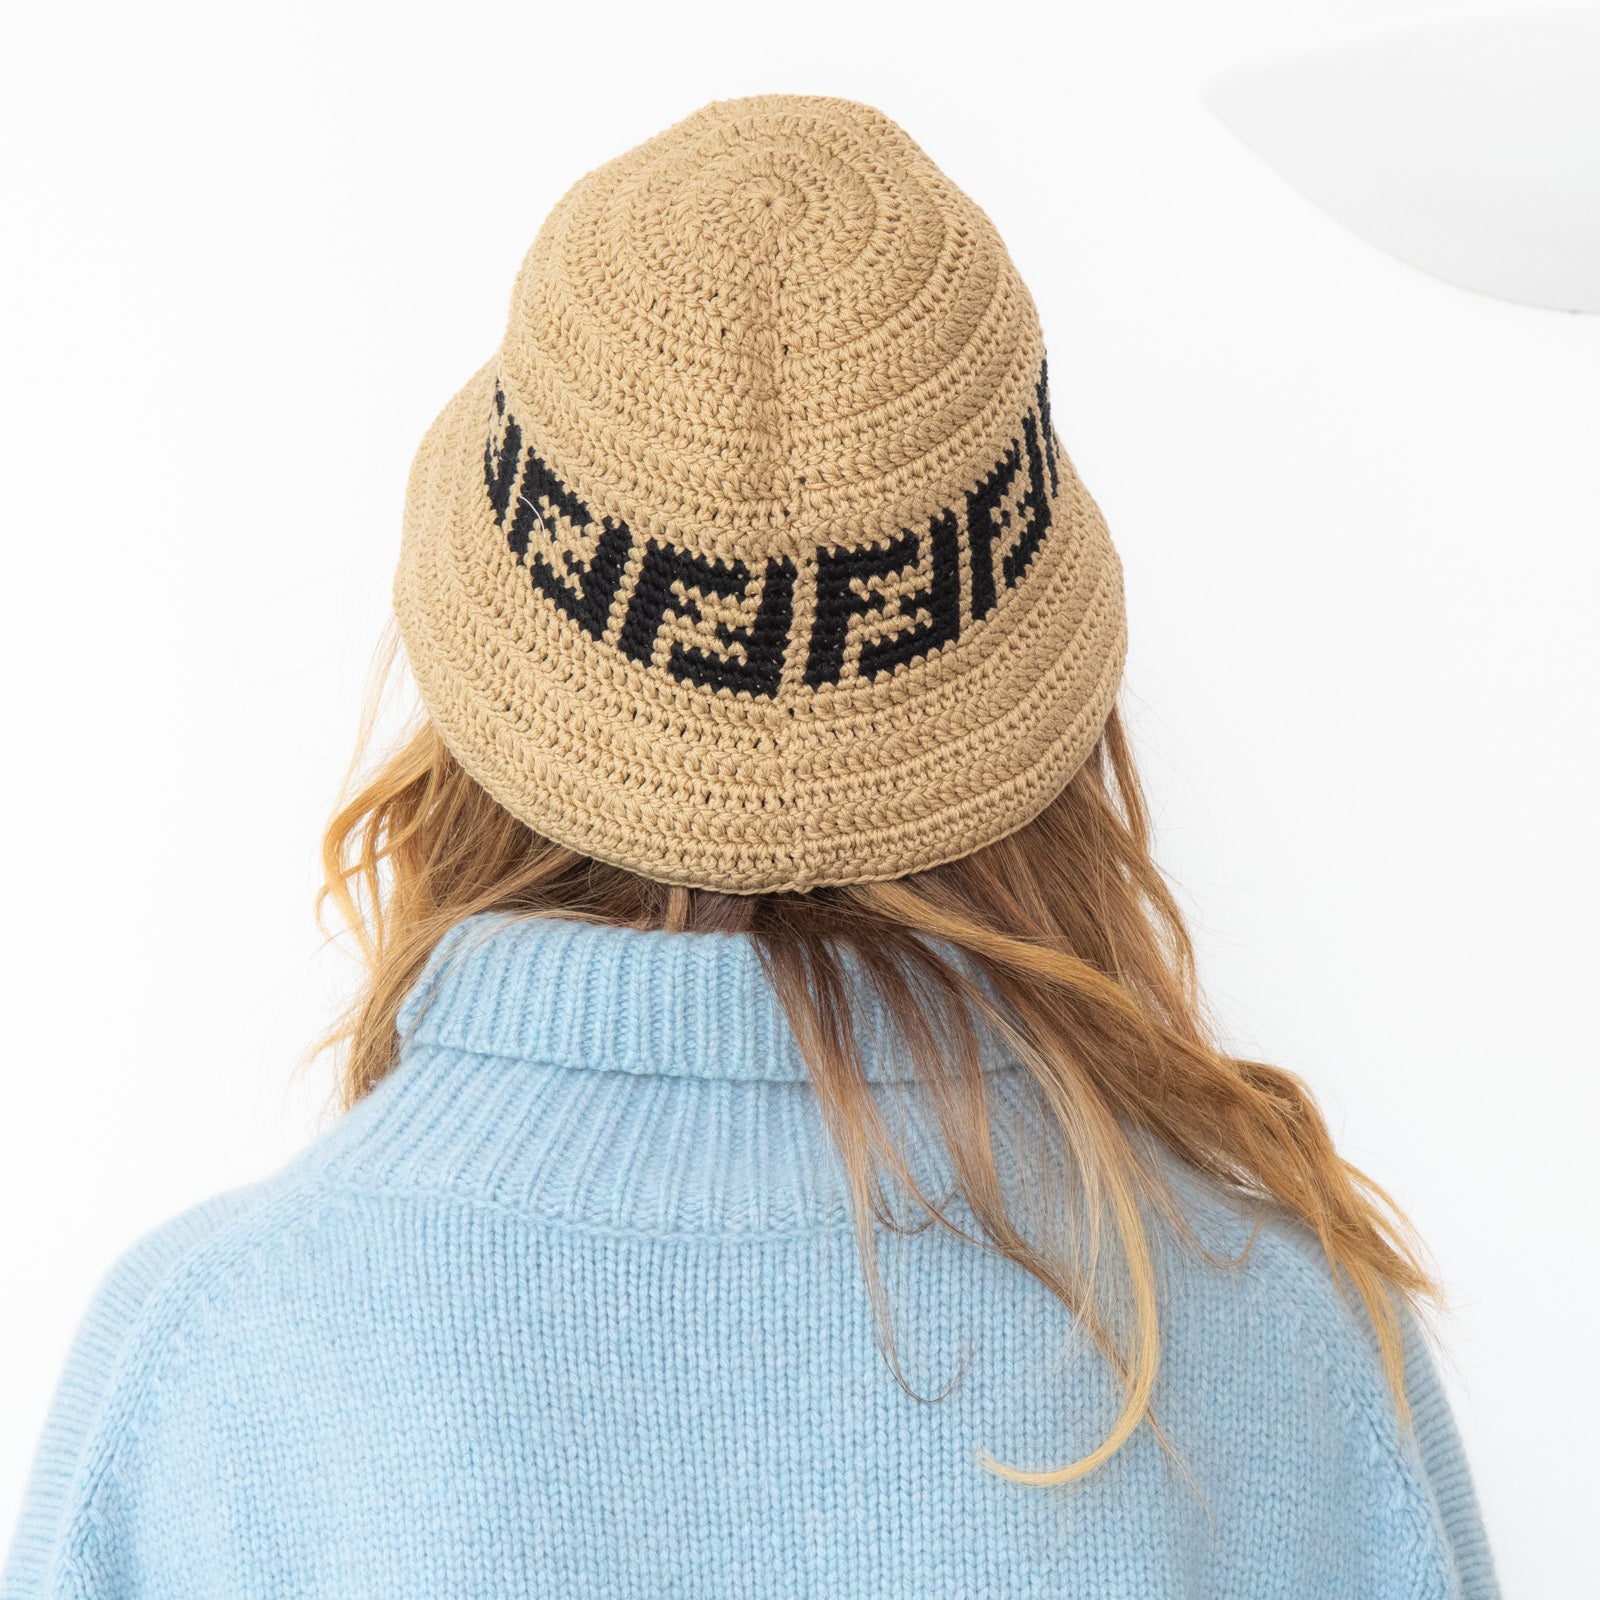 Fendi Crochet Bucket Hat - Image 3 of 4